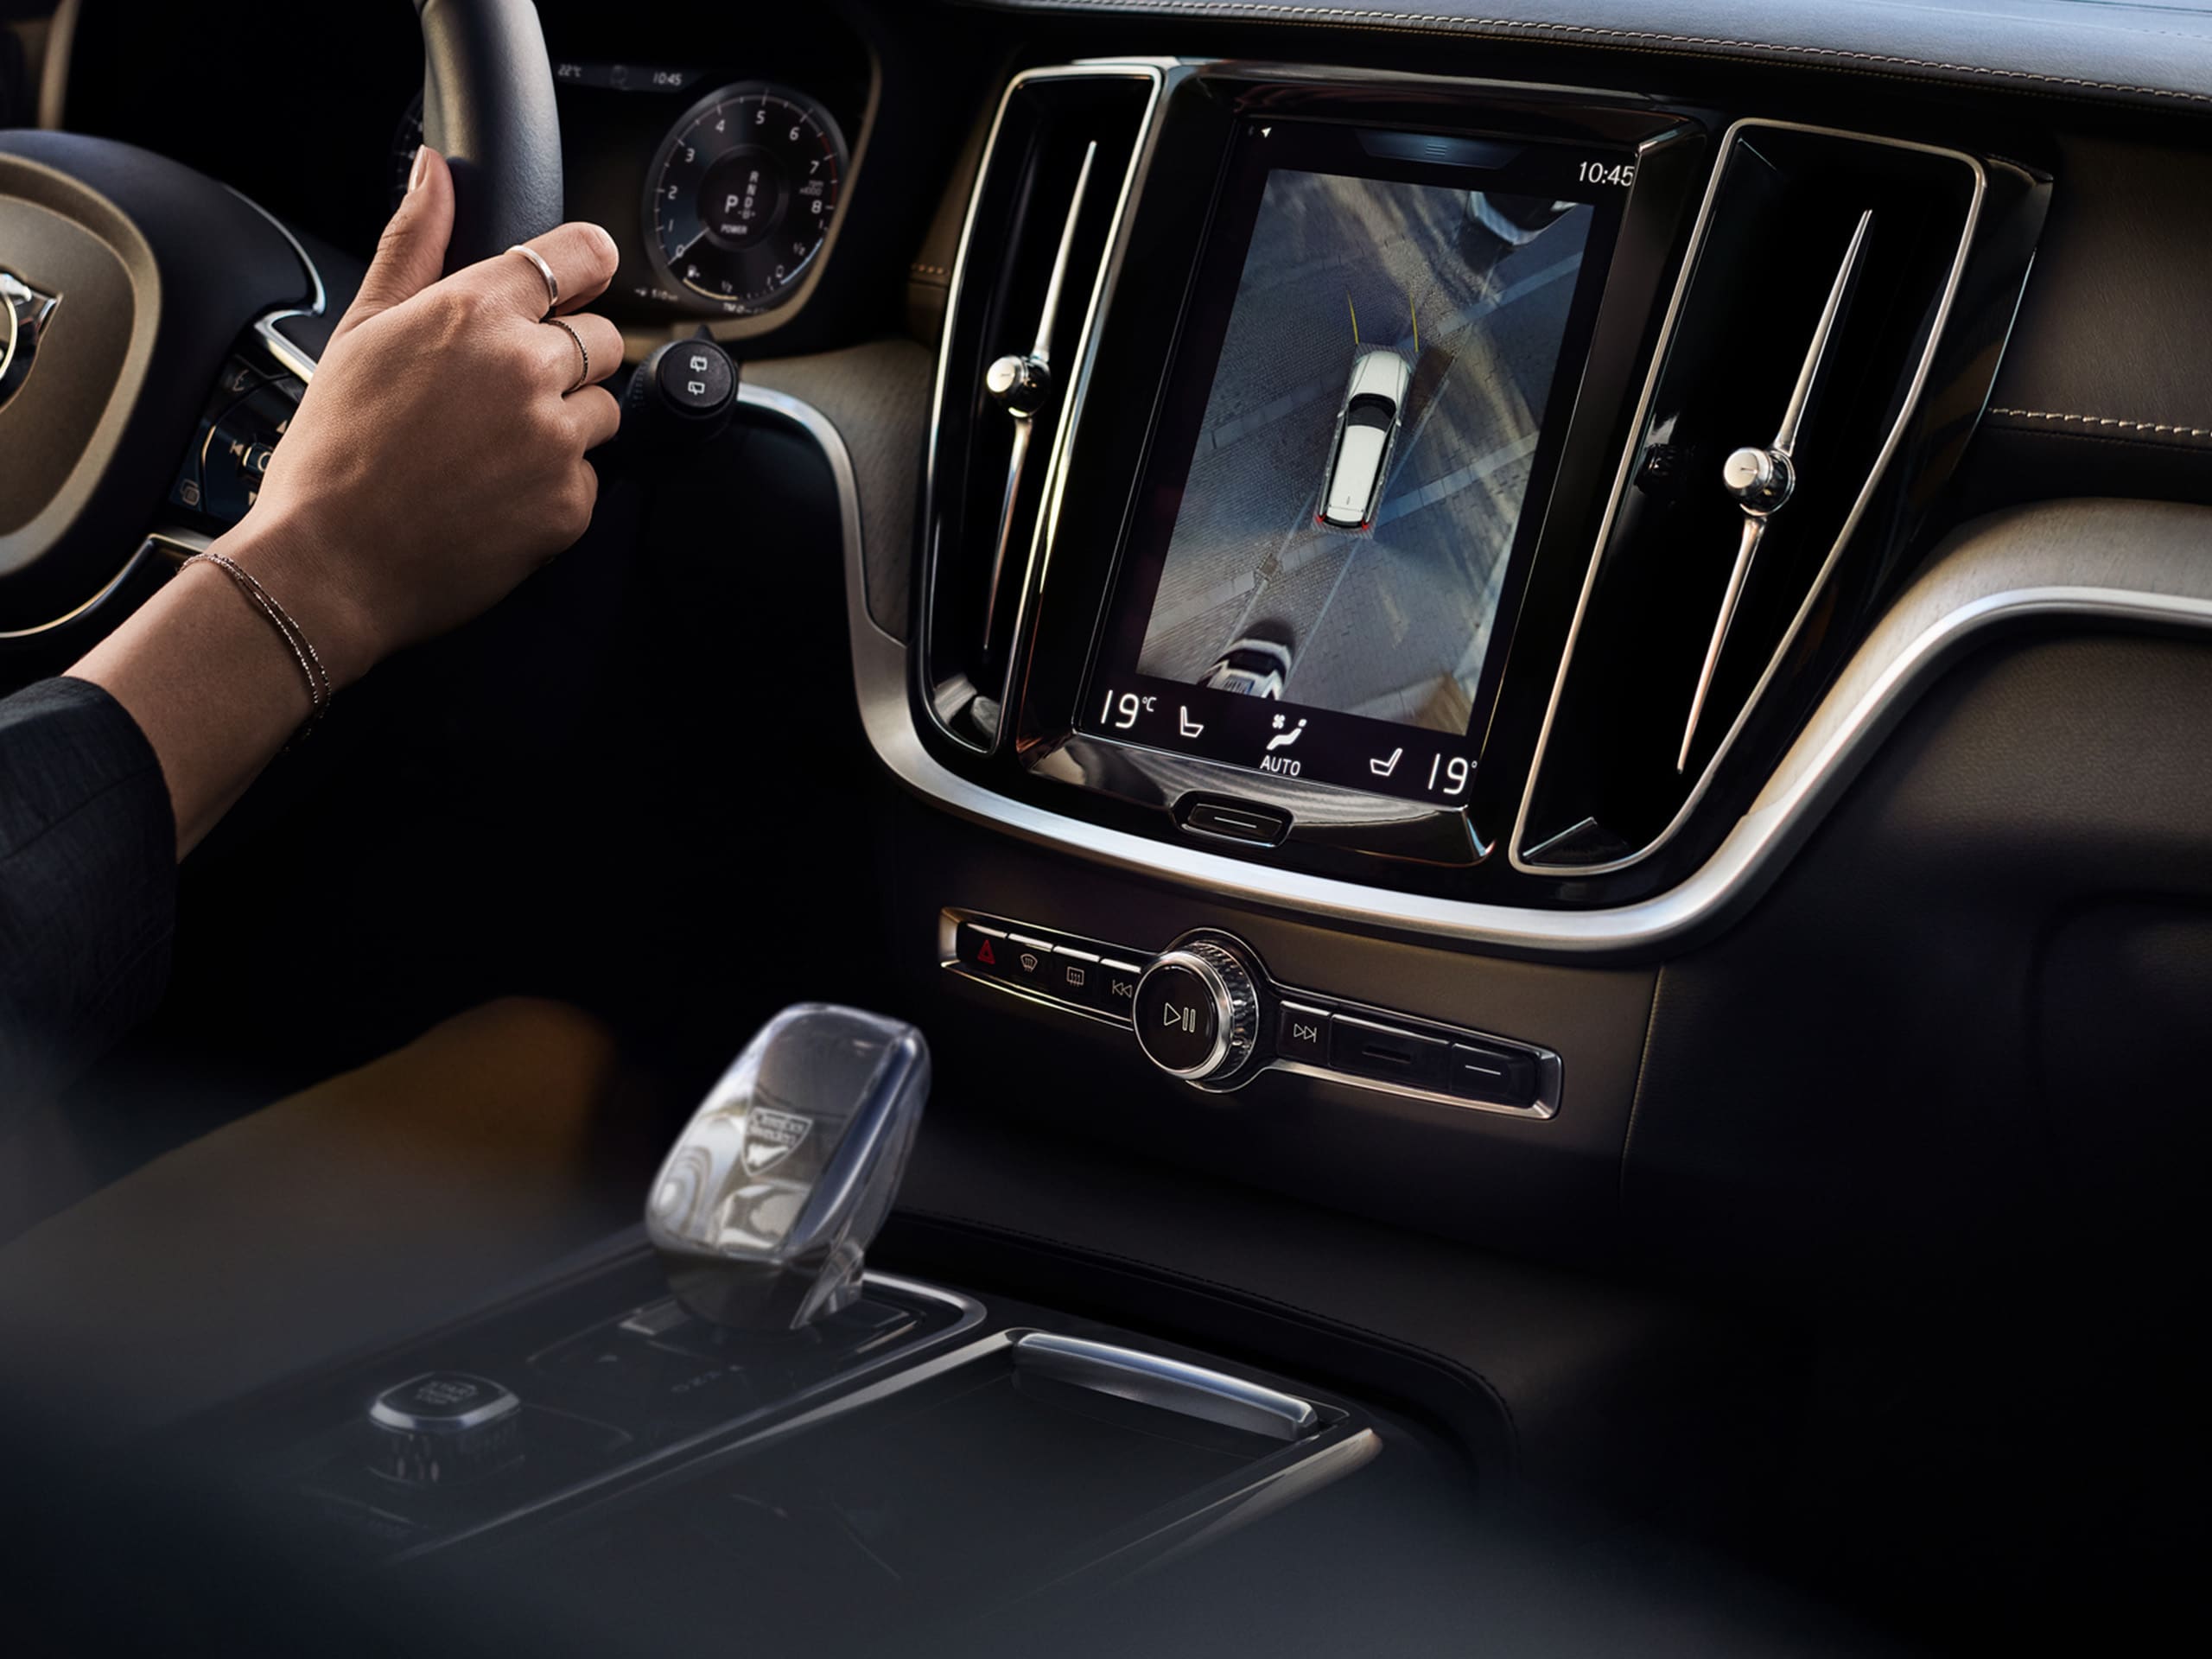 Interior de um automóvel conduzido pelas mãos de uma mulher, visíveis na imagem, onde se revelam também todos os pormenores de conforto e design deste modelo.